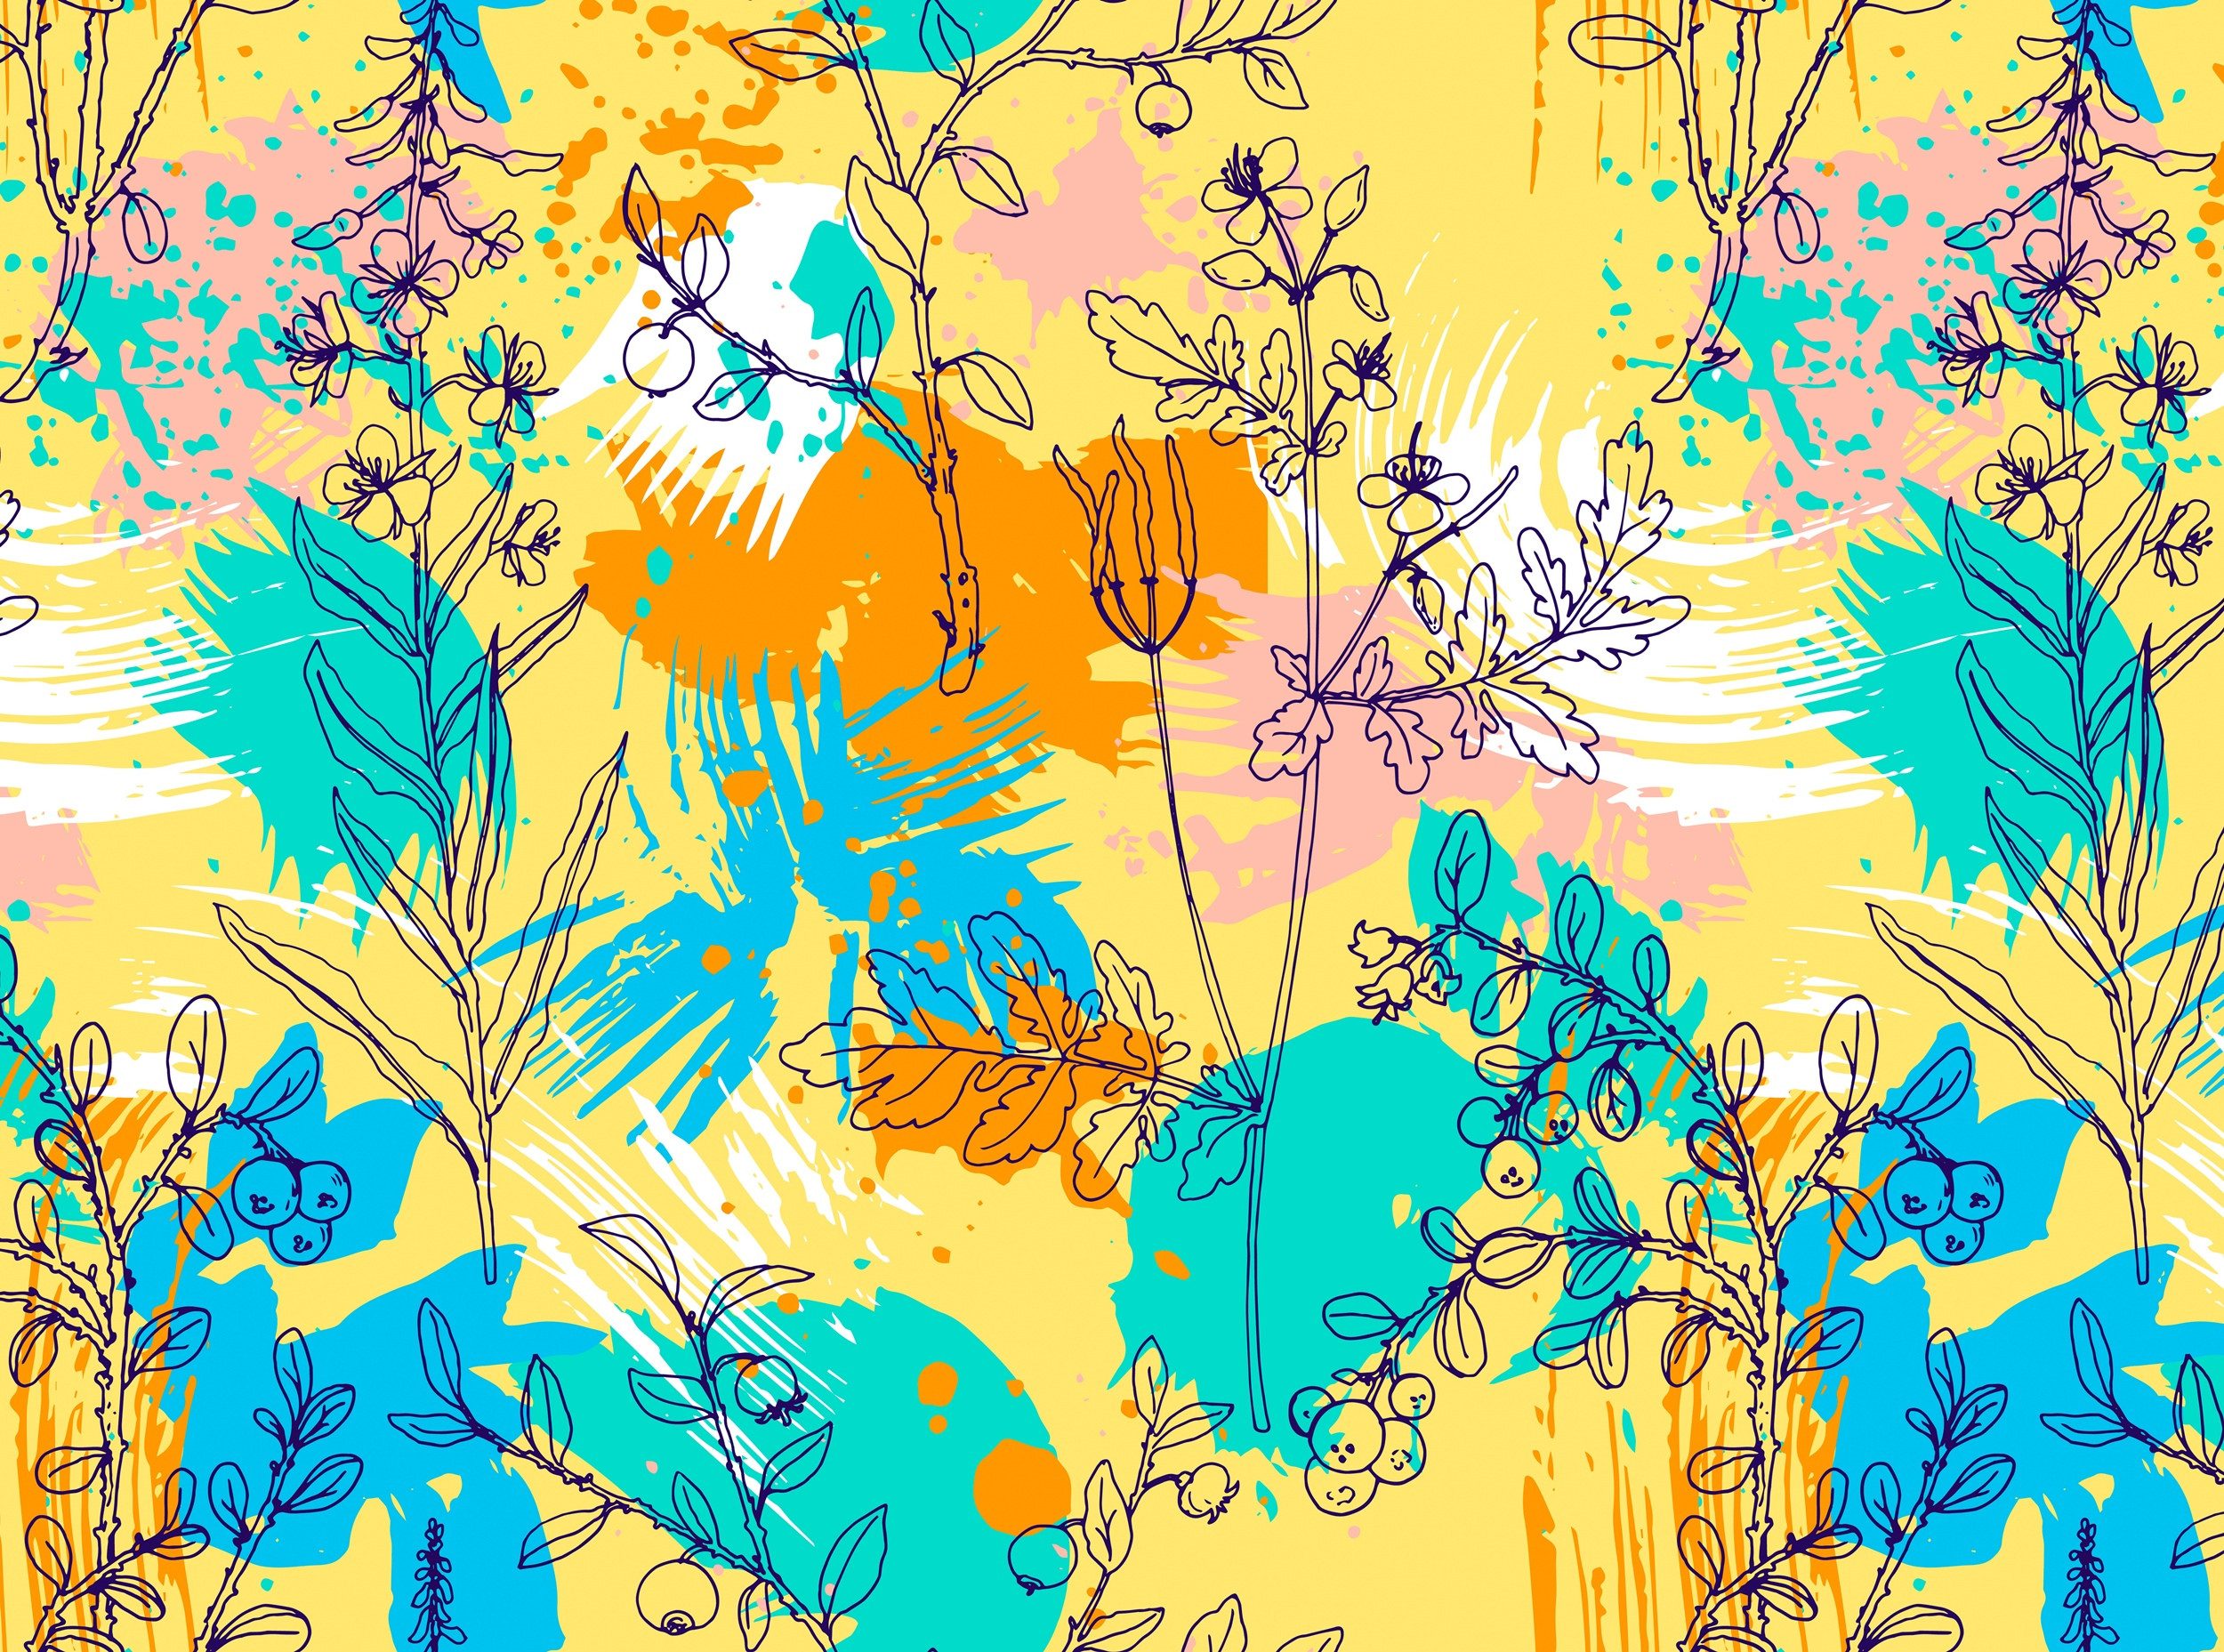 Papermoon Fototapete VLIES-Tapete Premium Natur Blumen Abstrakt Blau Orange Gelb Weiß Rosa, Kleister KOSTENLOS, reduziert, 3D-Effekt, restlos trocken abziehbar, (komplett Set inkl. Tapetenkleister, 9030), Wandtapete Bild Dekoration Wand-Dekor Motiv Tapete Poster